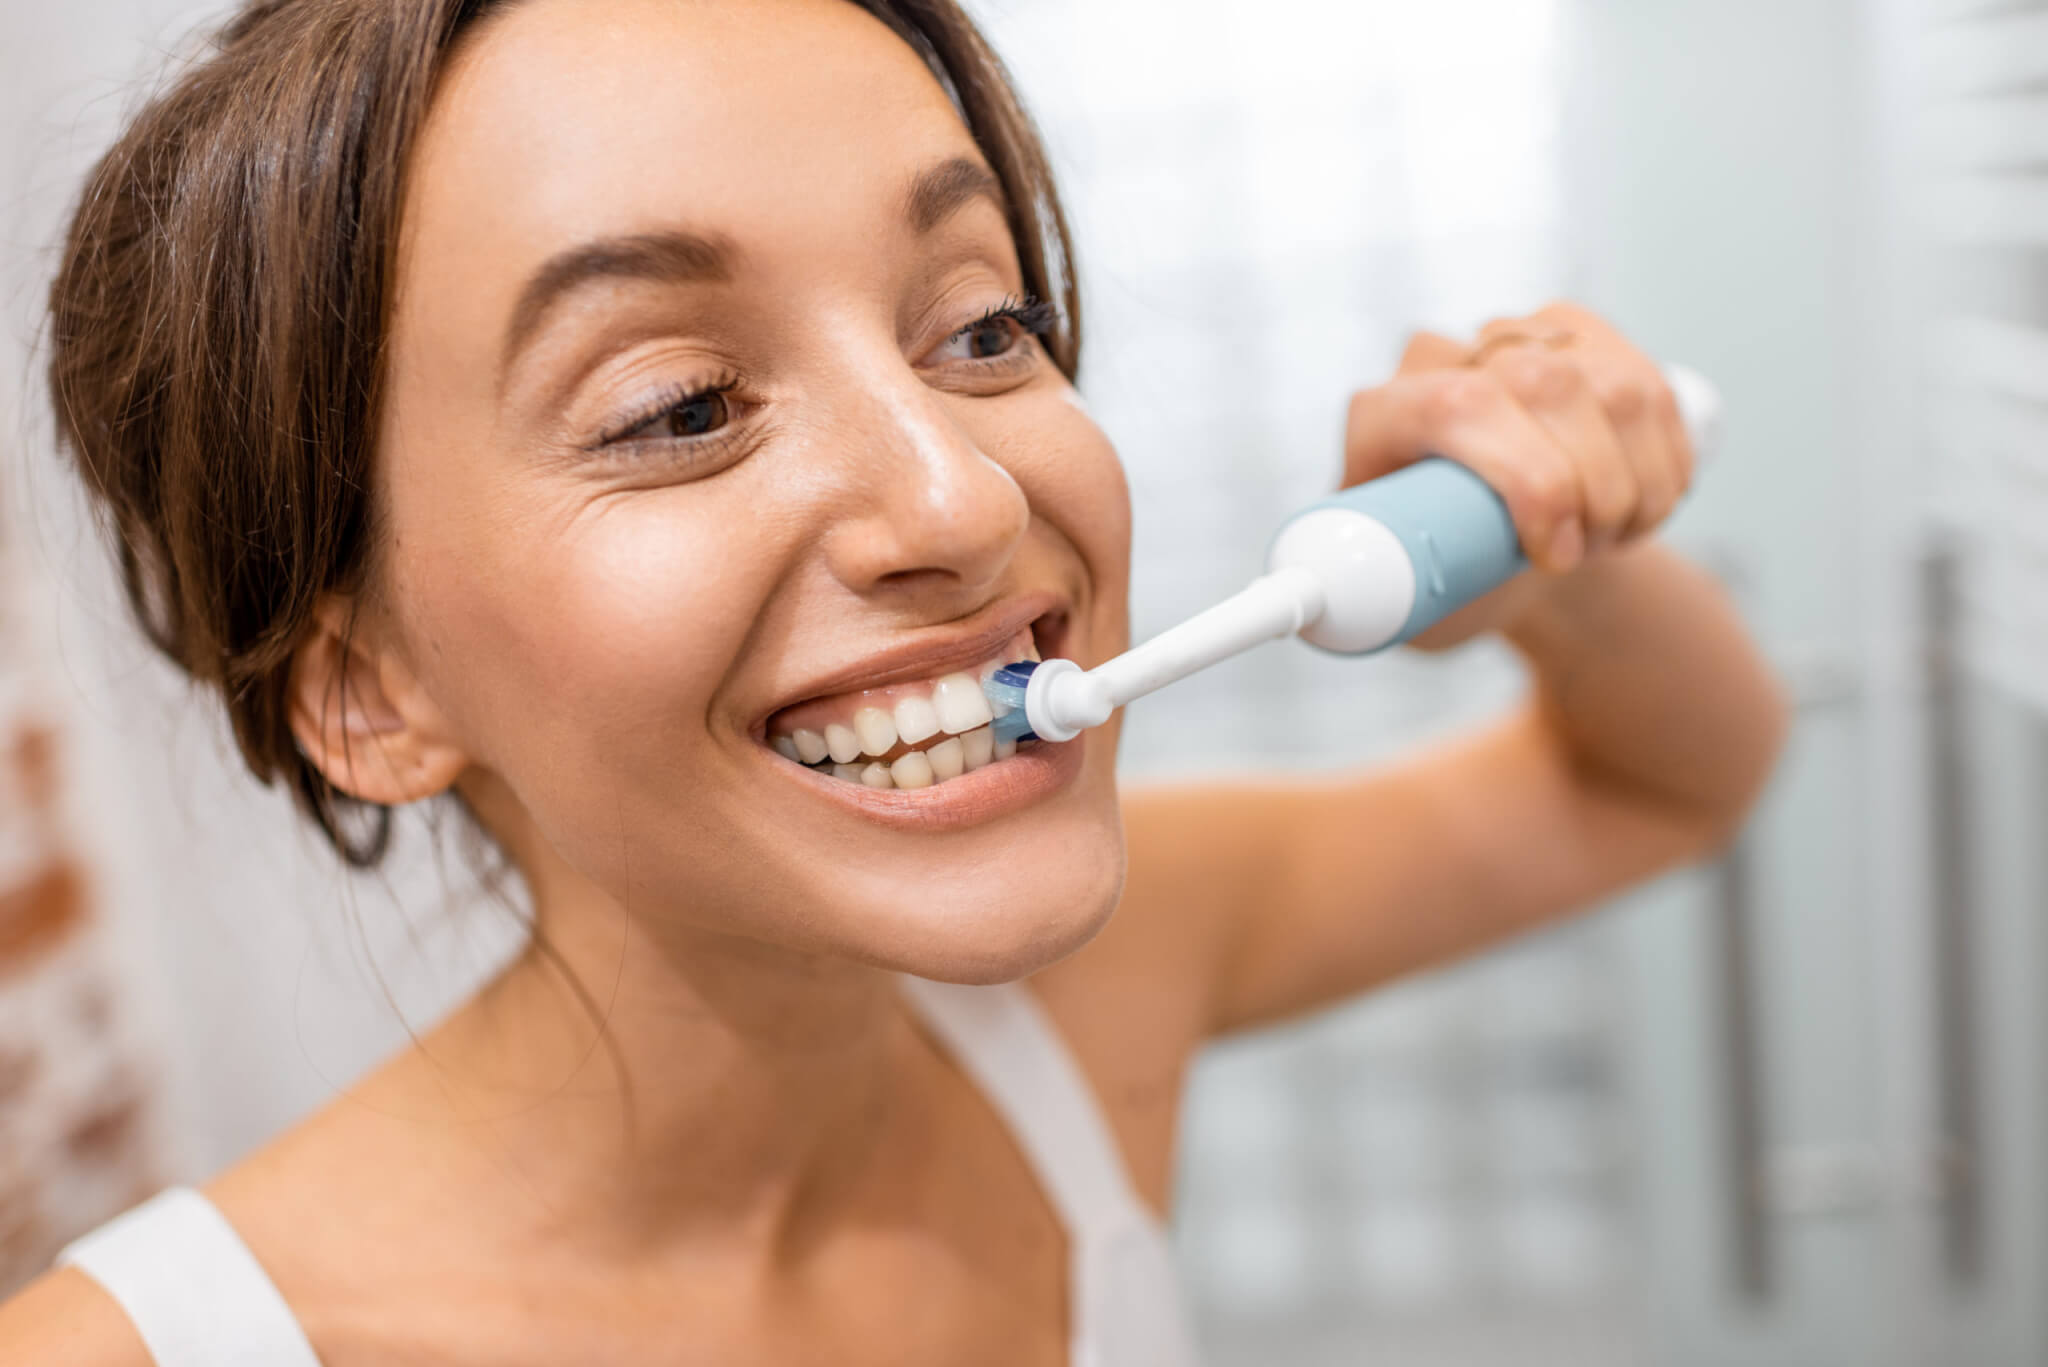 Cepillo de Dientes Eléctrico o Manual, ¿Cuál es el Mejor? - Denta Care